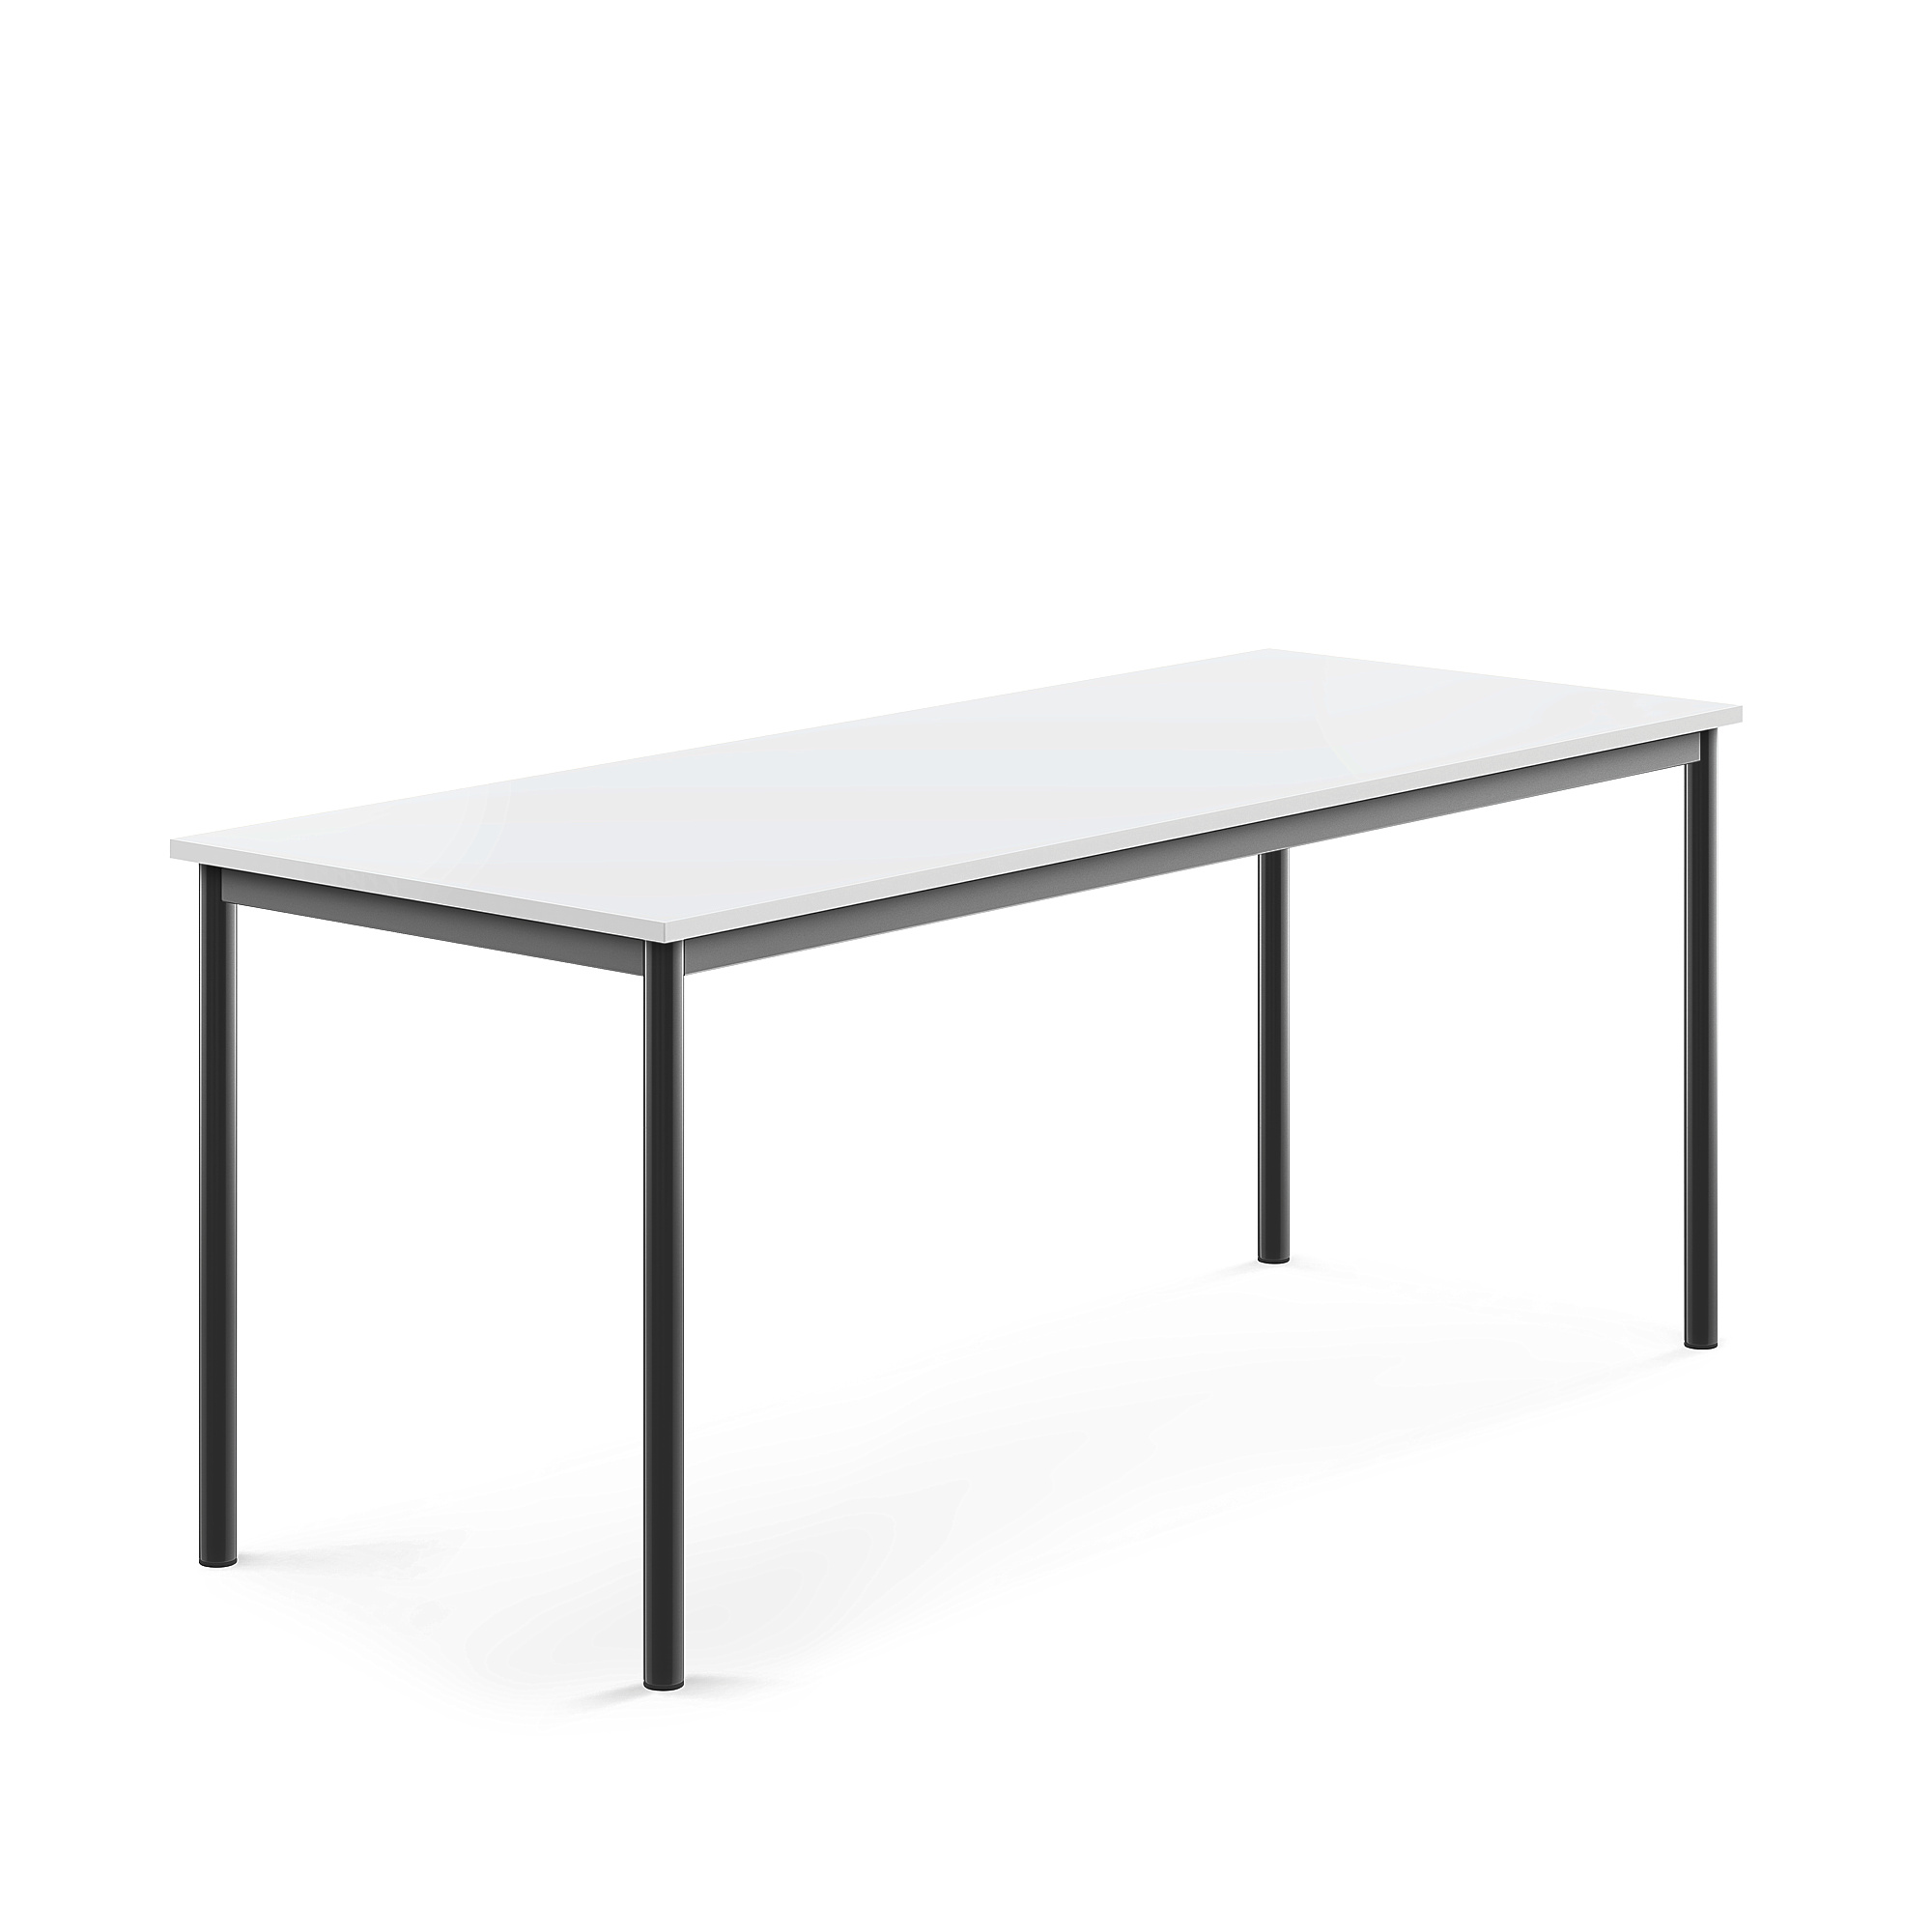 Stůl SONITUS, 1800x700x720 mm, antracitově šedé nohy, HPL deska tlumící hluk, bílá